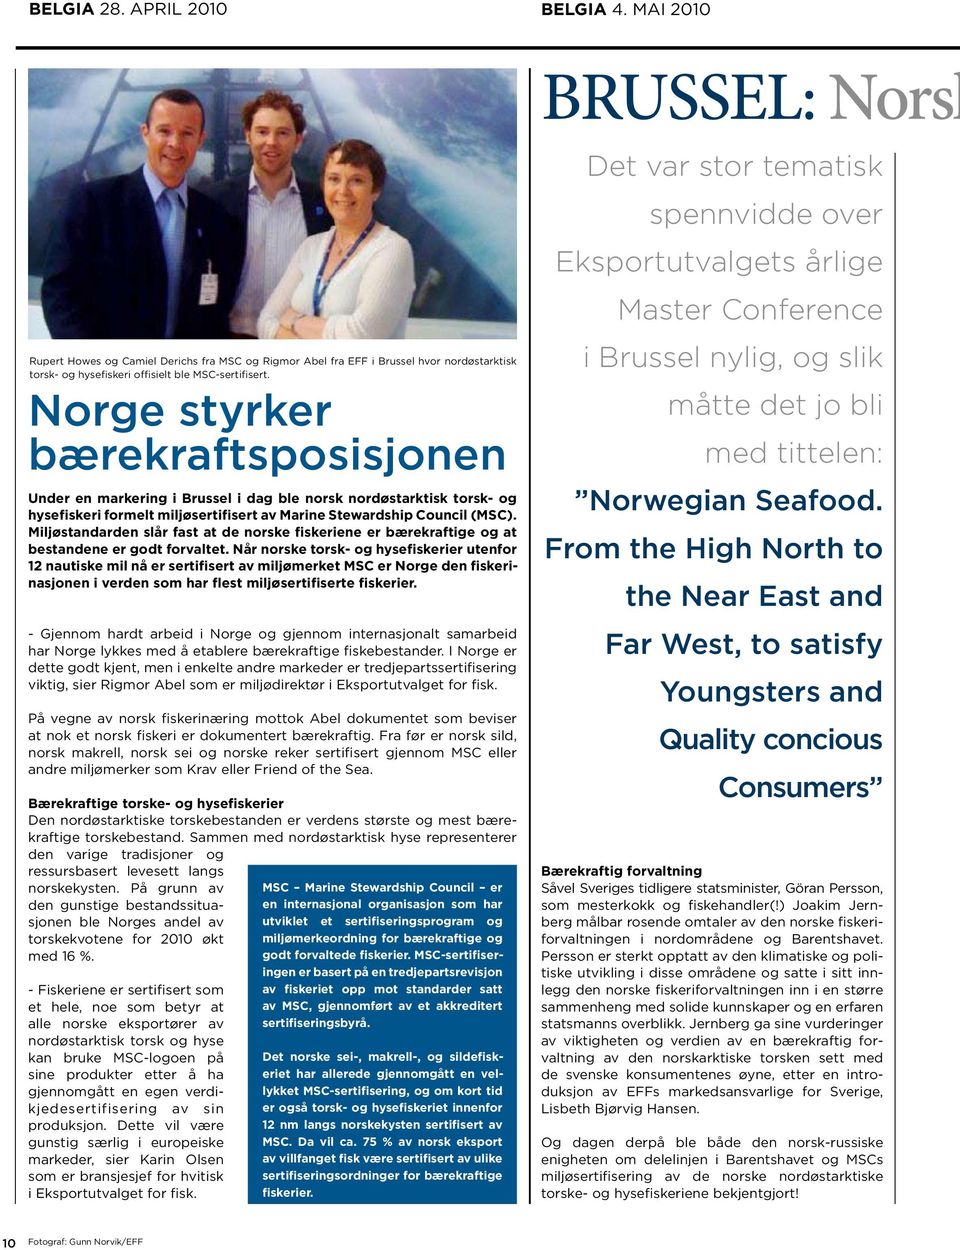 Miljøstandarden slår fast at de norske fiskeriene er bærekraftige og at bestandene er godt forvaltet.